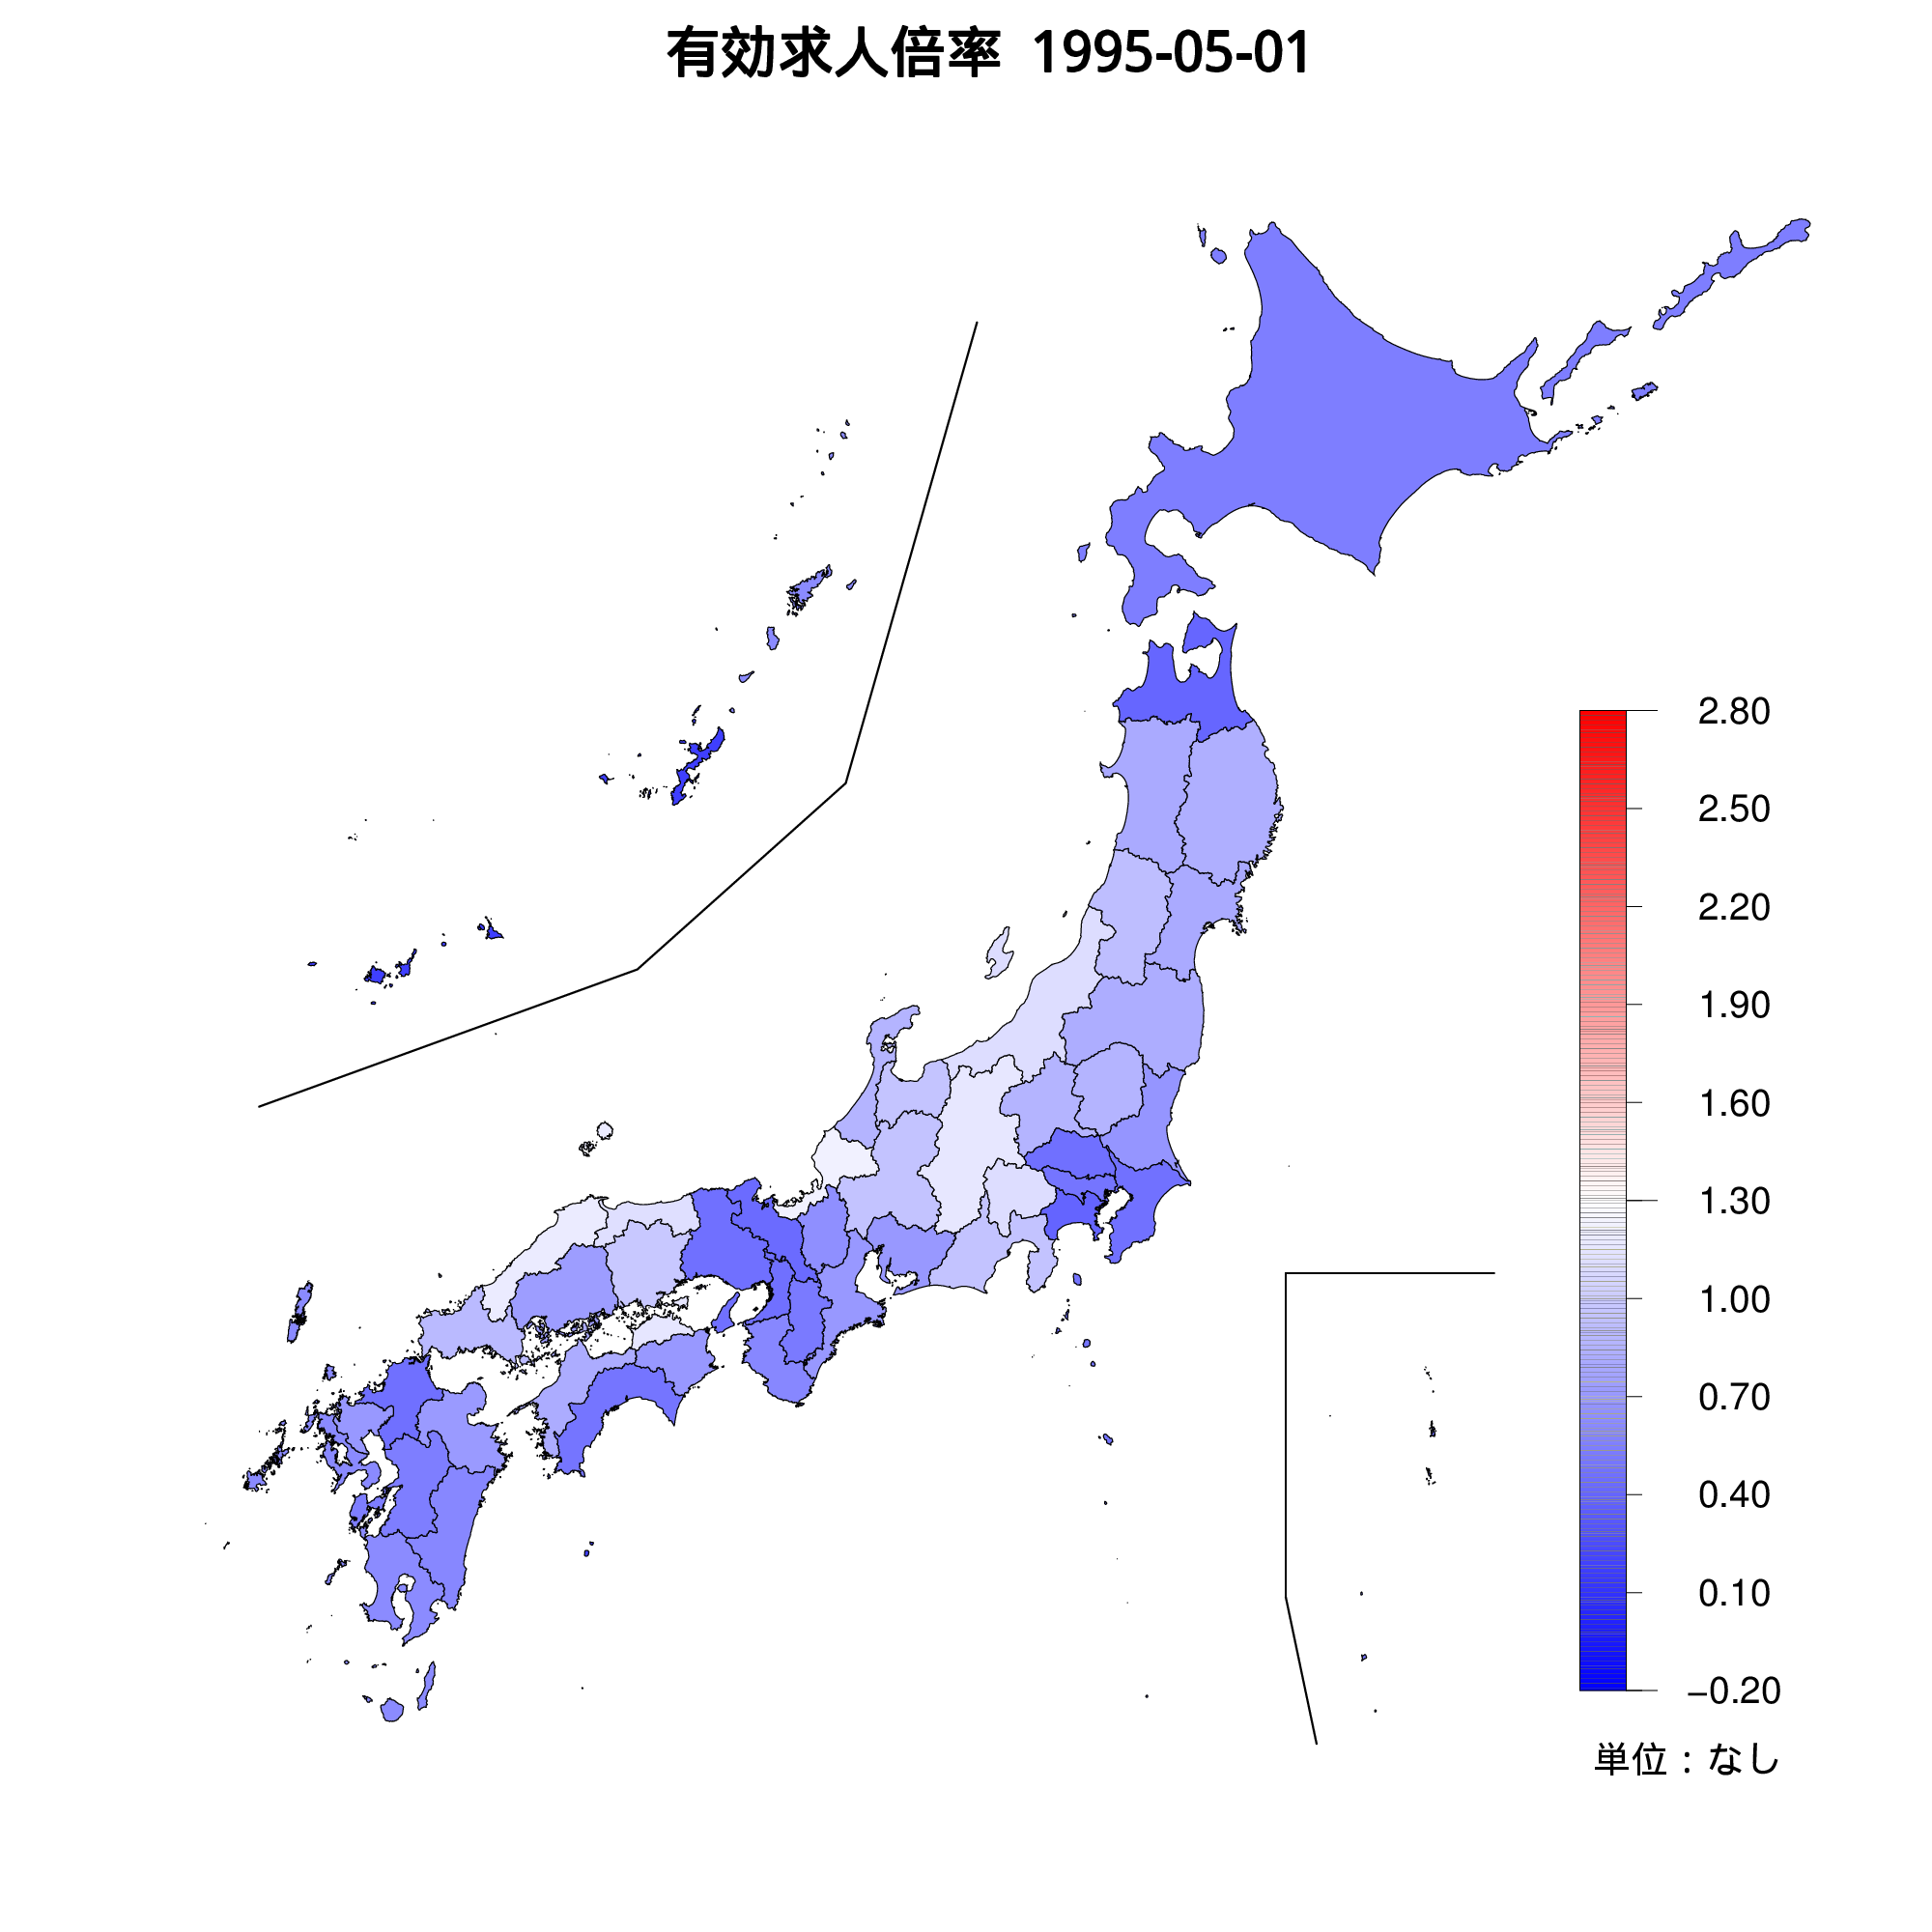 各都道府県の有効求人倍率を示す地図（1995年05月）